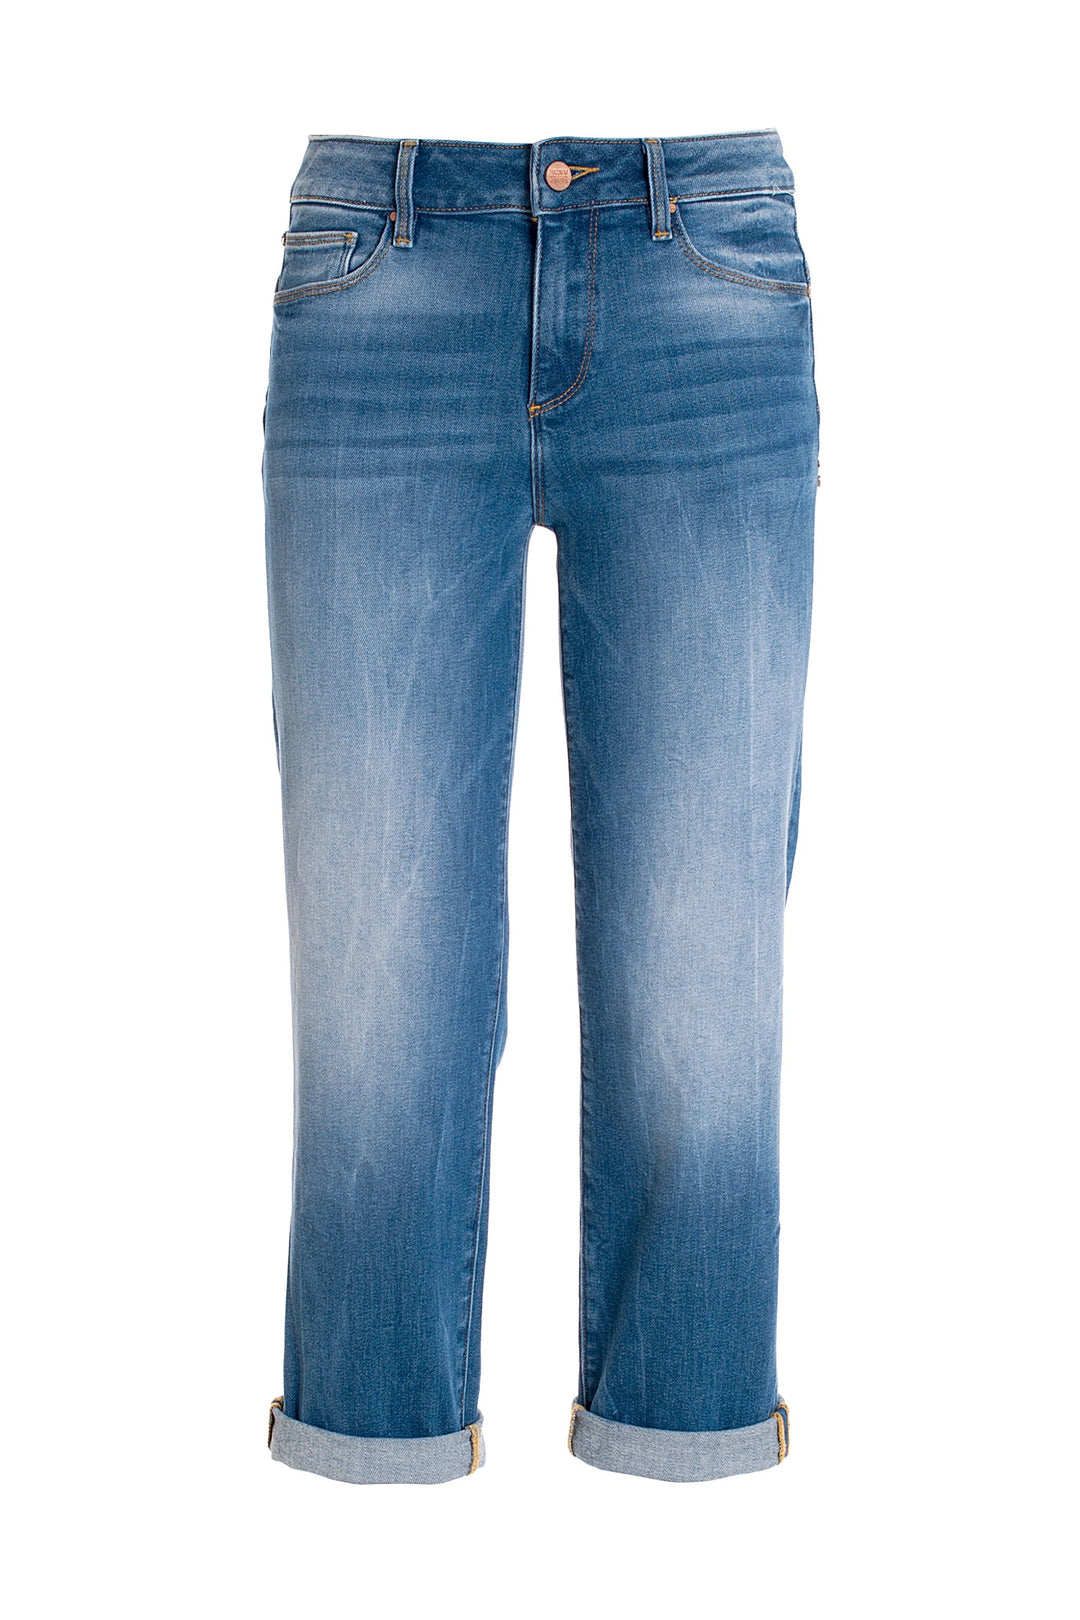 FRACOMINA Jeans boyfriend cropped in denim con lavaggio medio - Mancinelli 1954